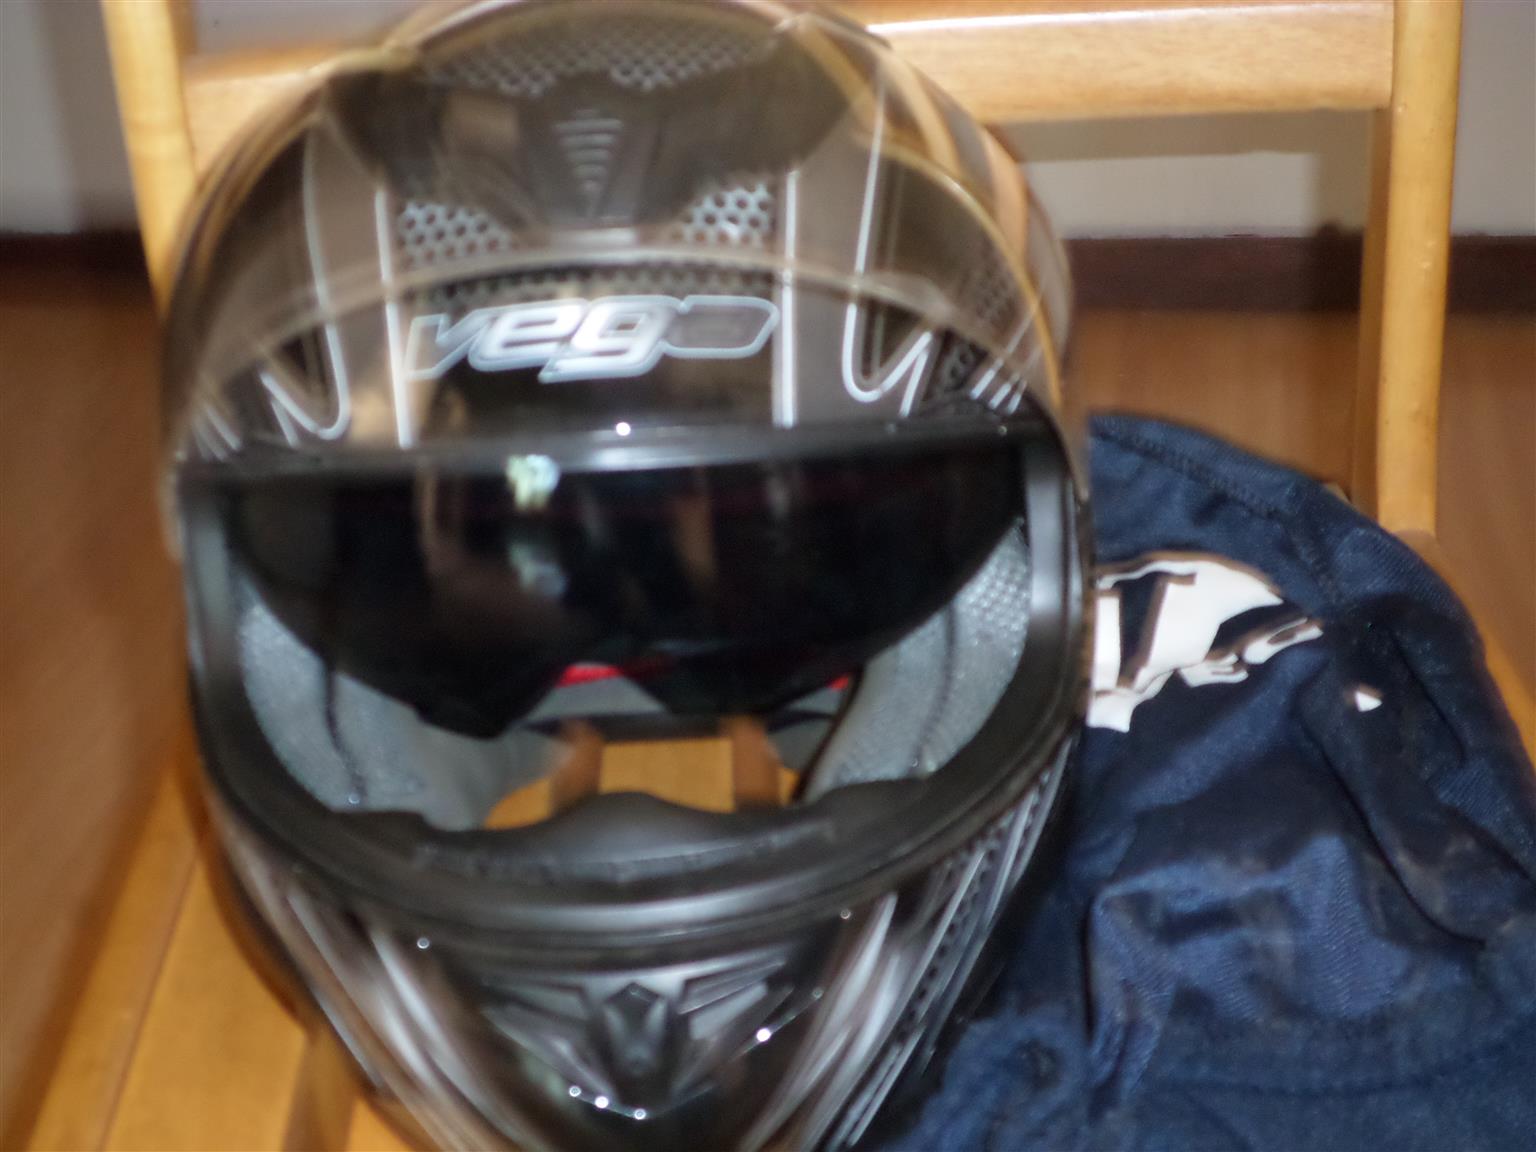 Vega Bike Helmet